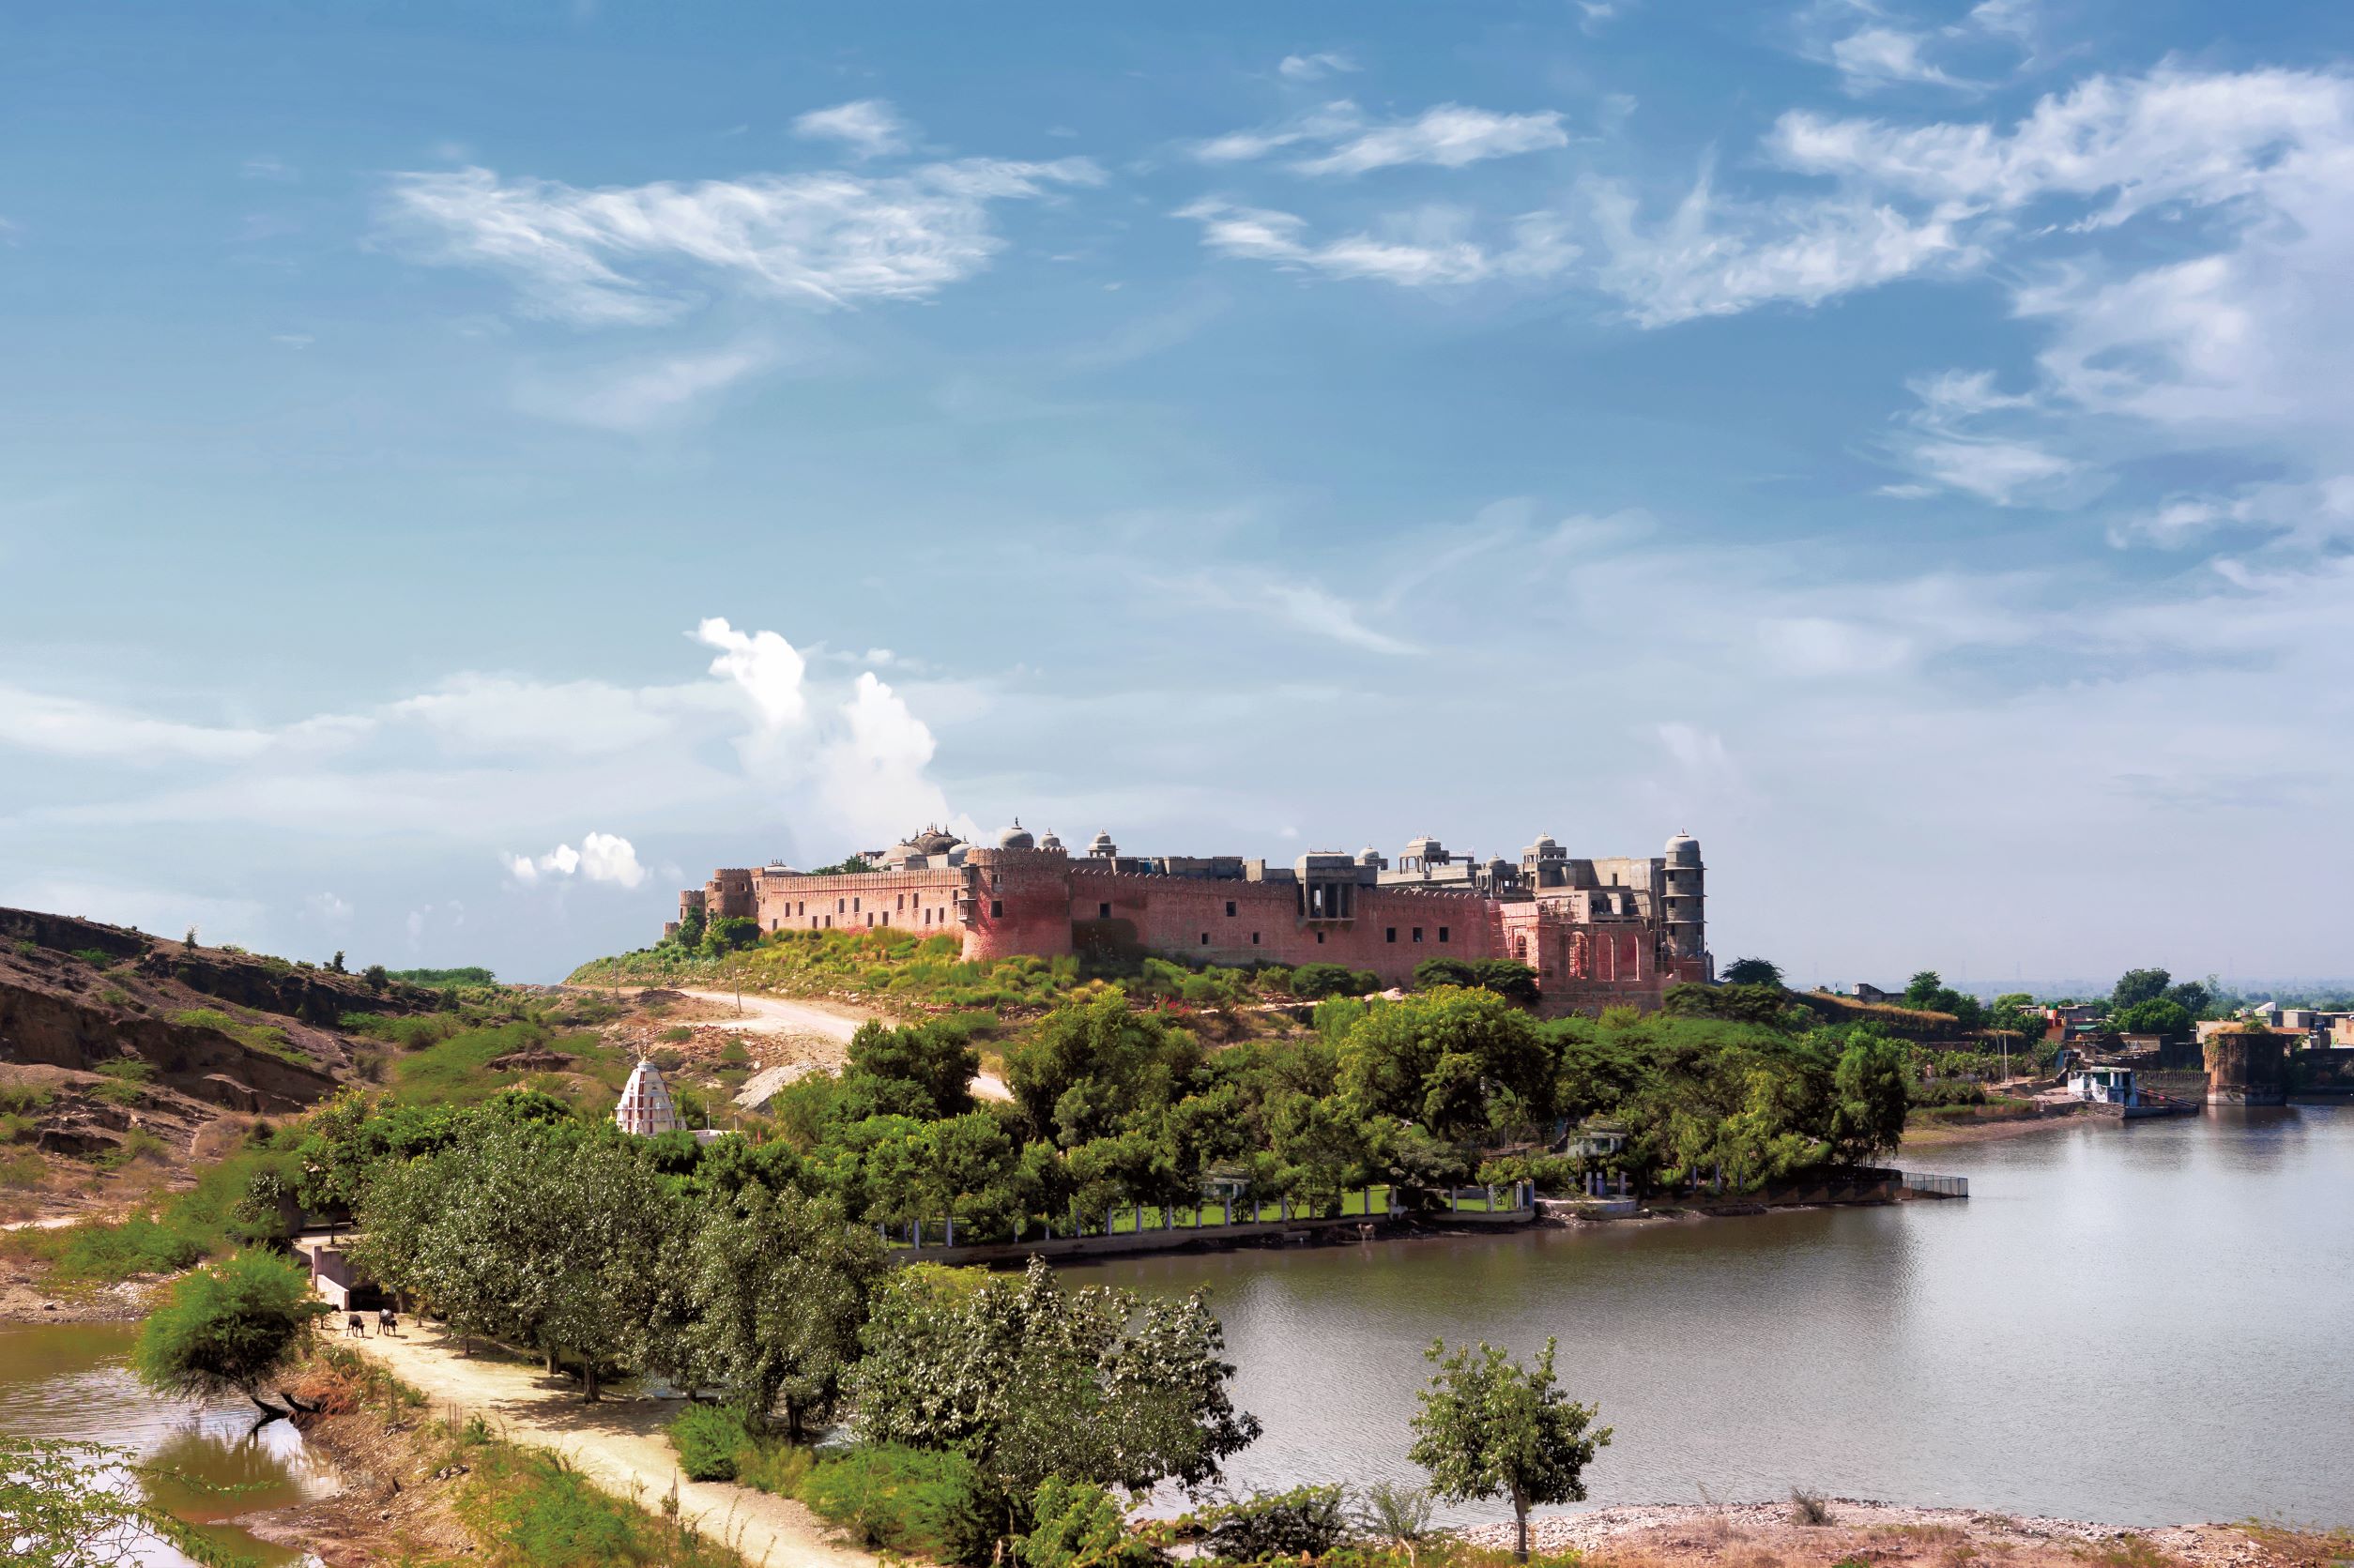 與 Barwara 湖相鄰的 Six Senses Fort Barwara，是由 14 世紀的城堡宮殿改建而成。